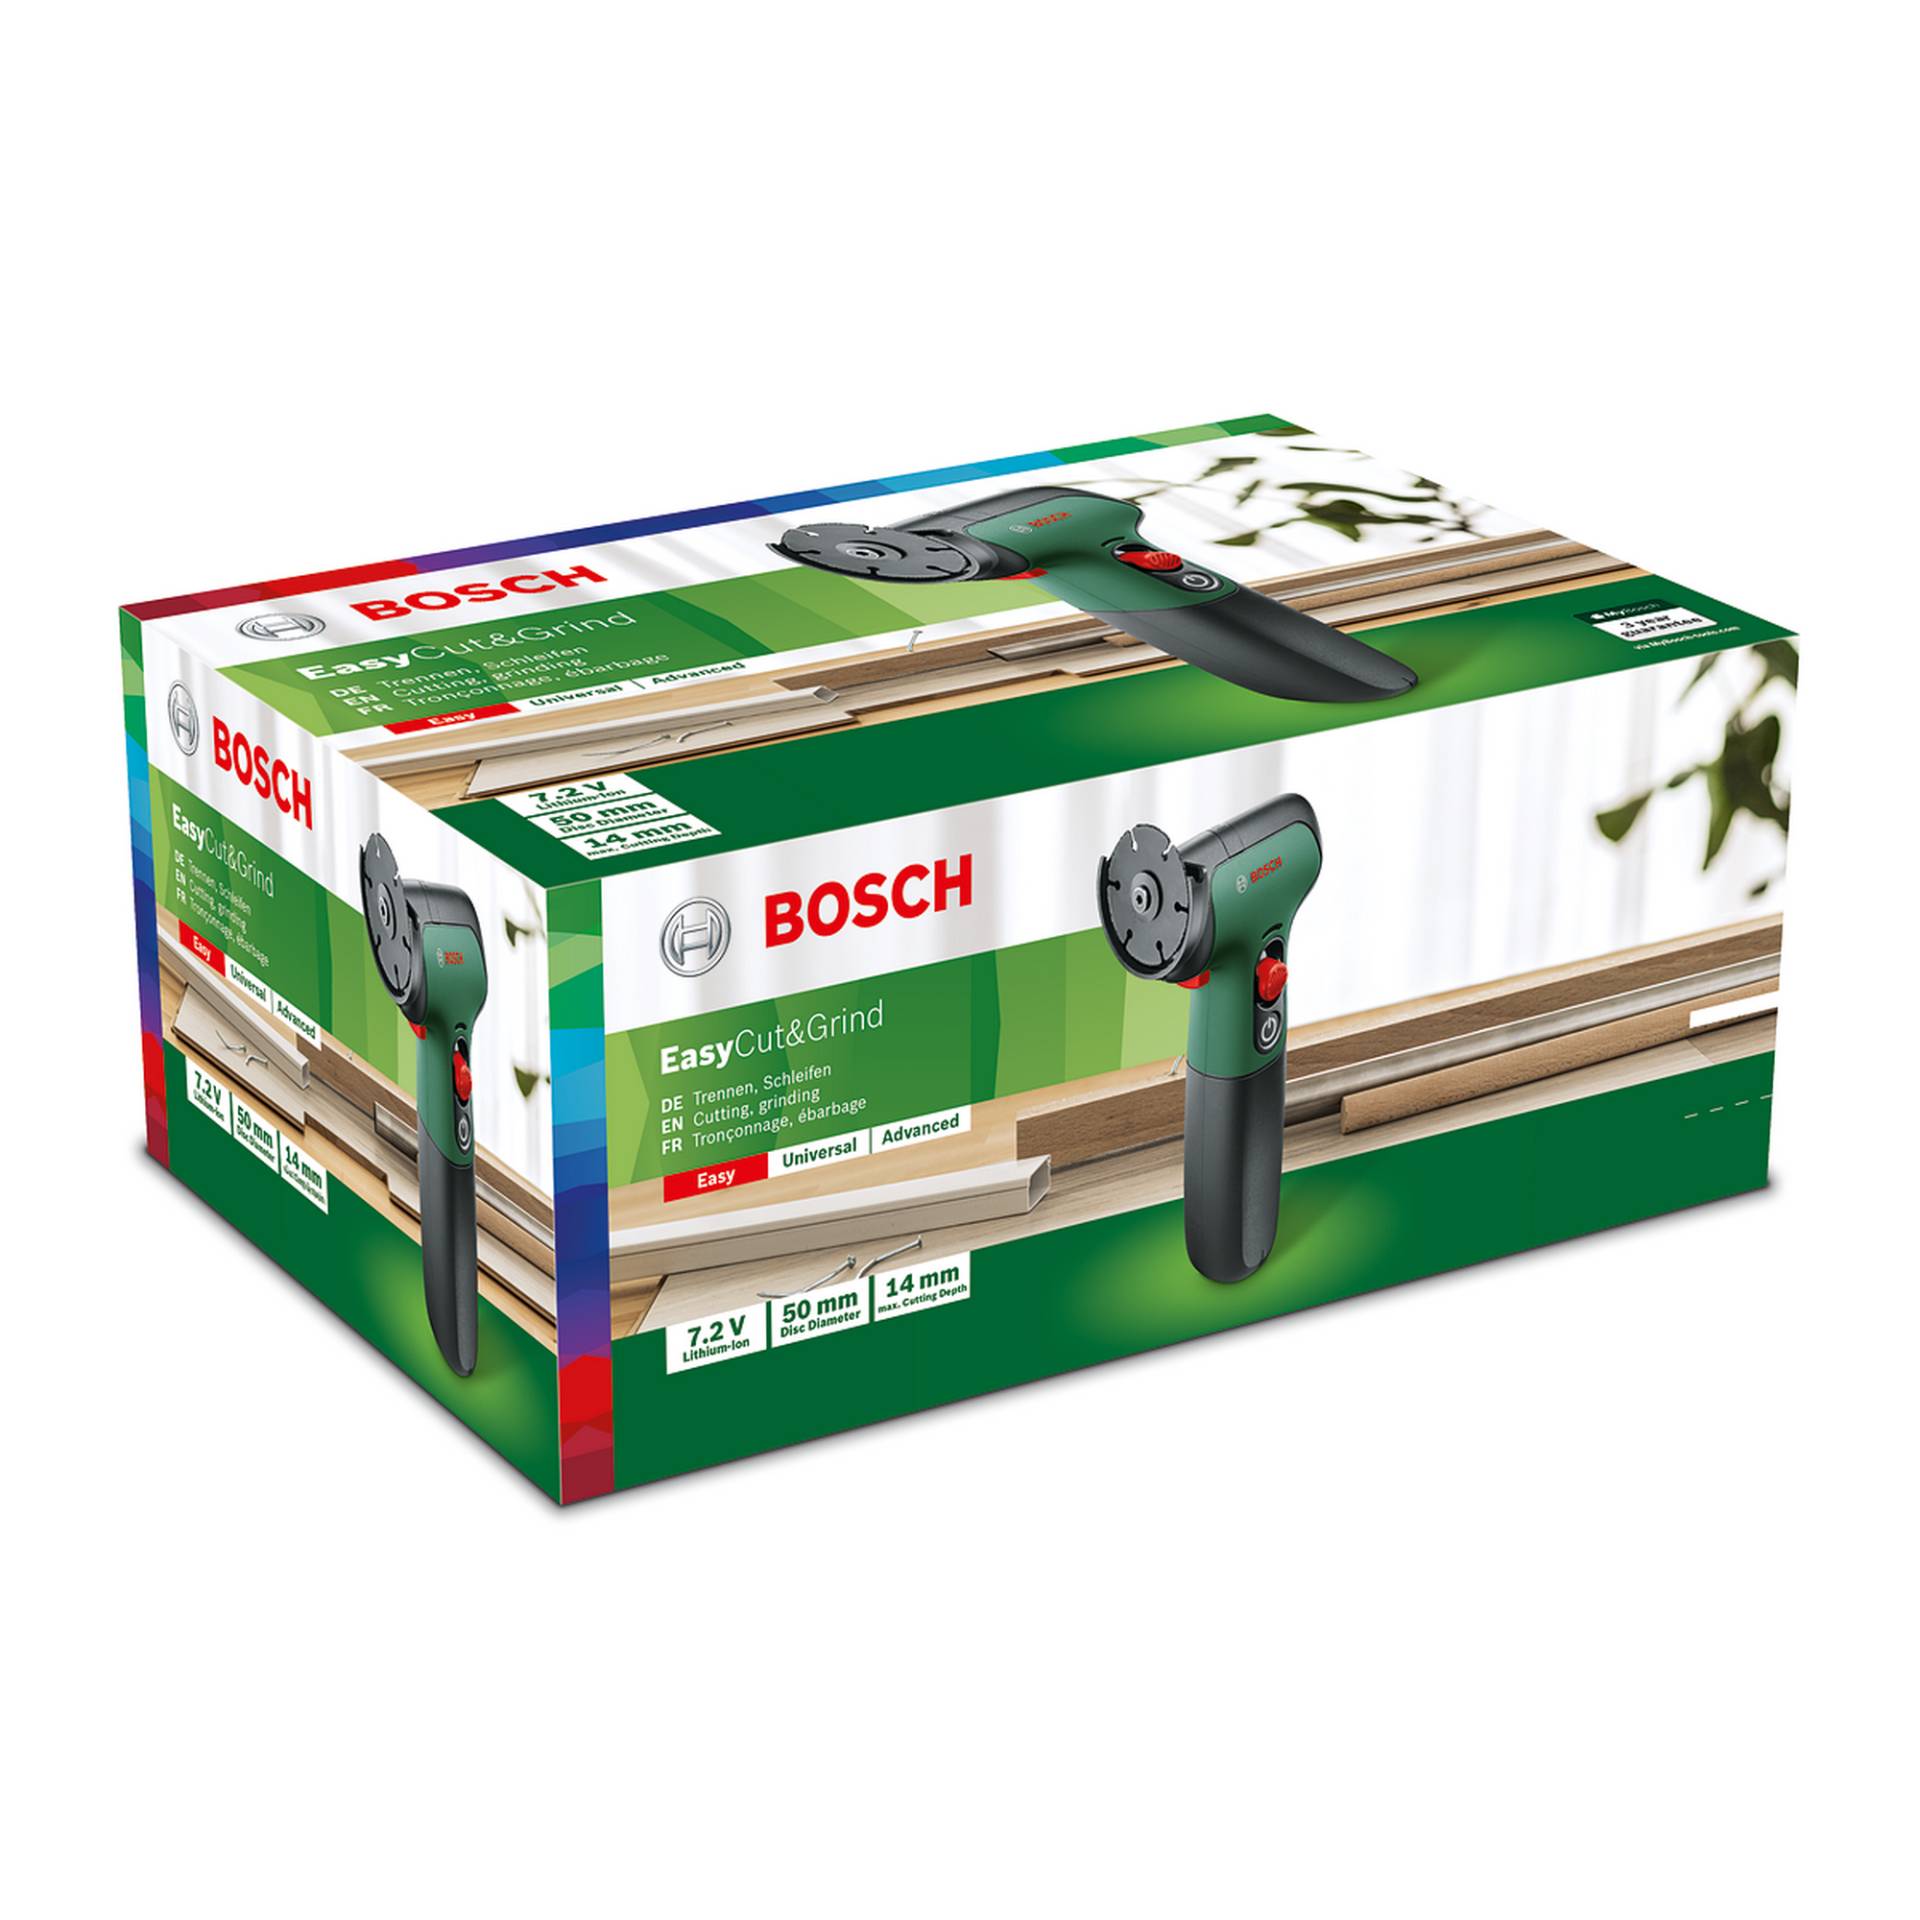 Bosch Akku-Winkelschleifer 'EasyCut&Grind' von Bosch